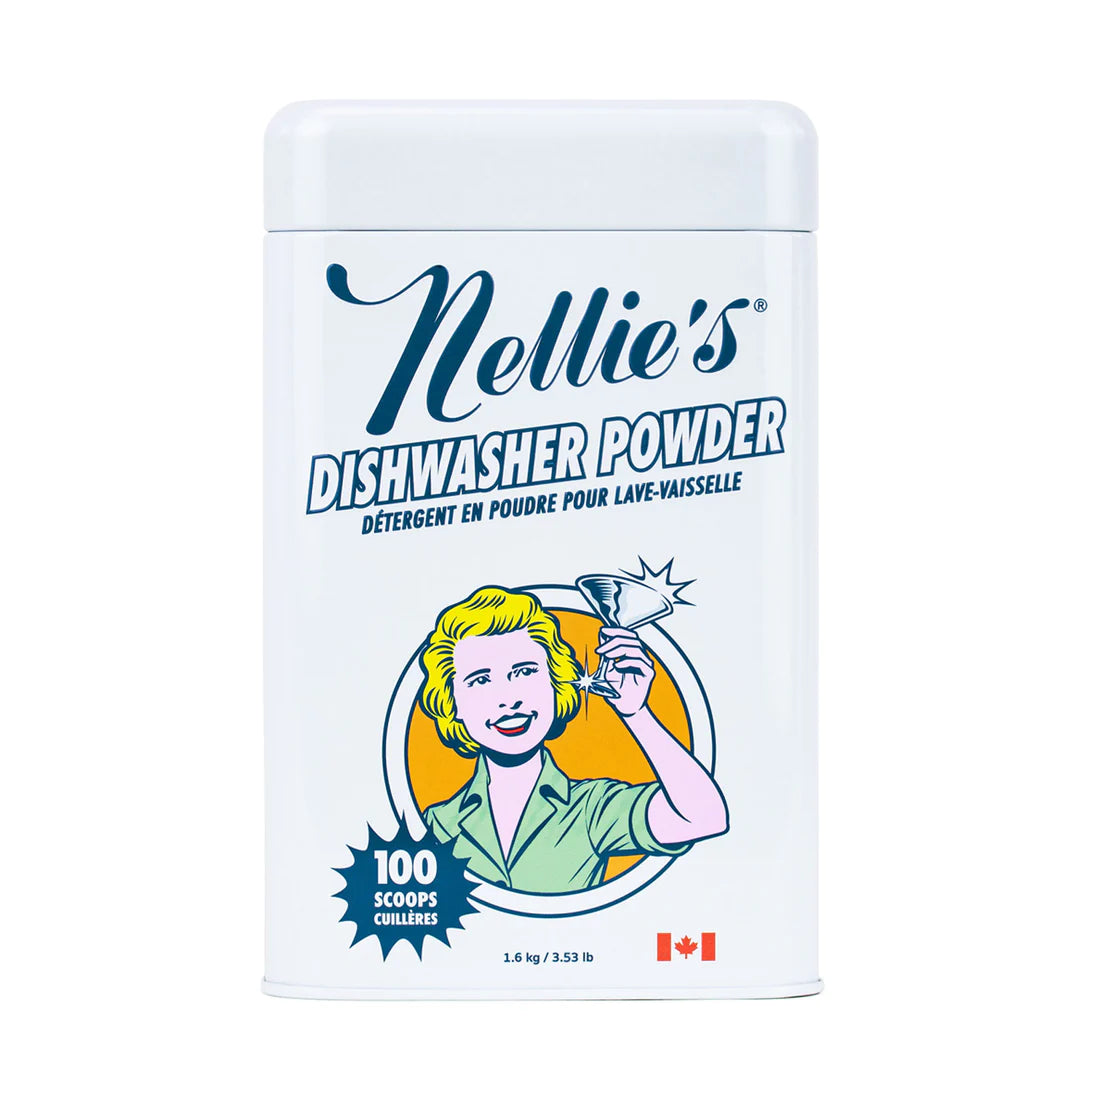 Nellies Dishwasher Powder 100 Scoop Tin